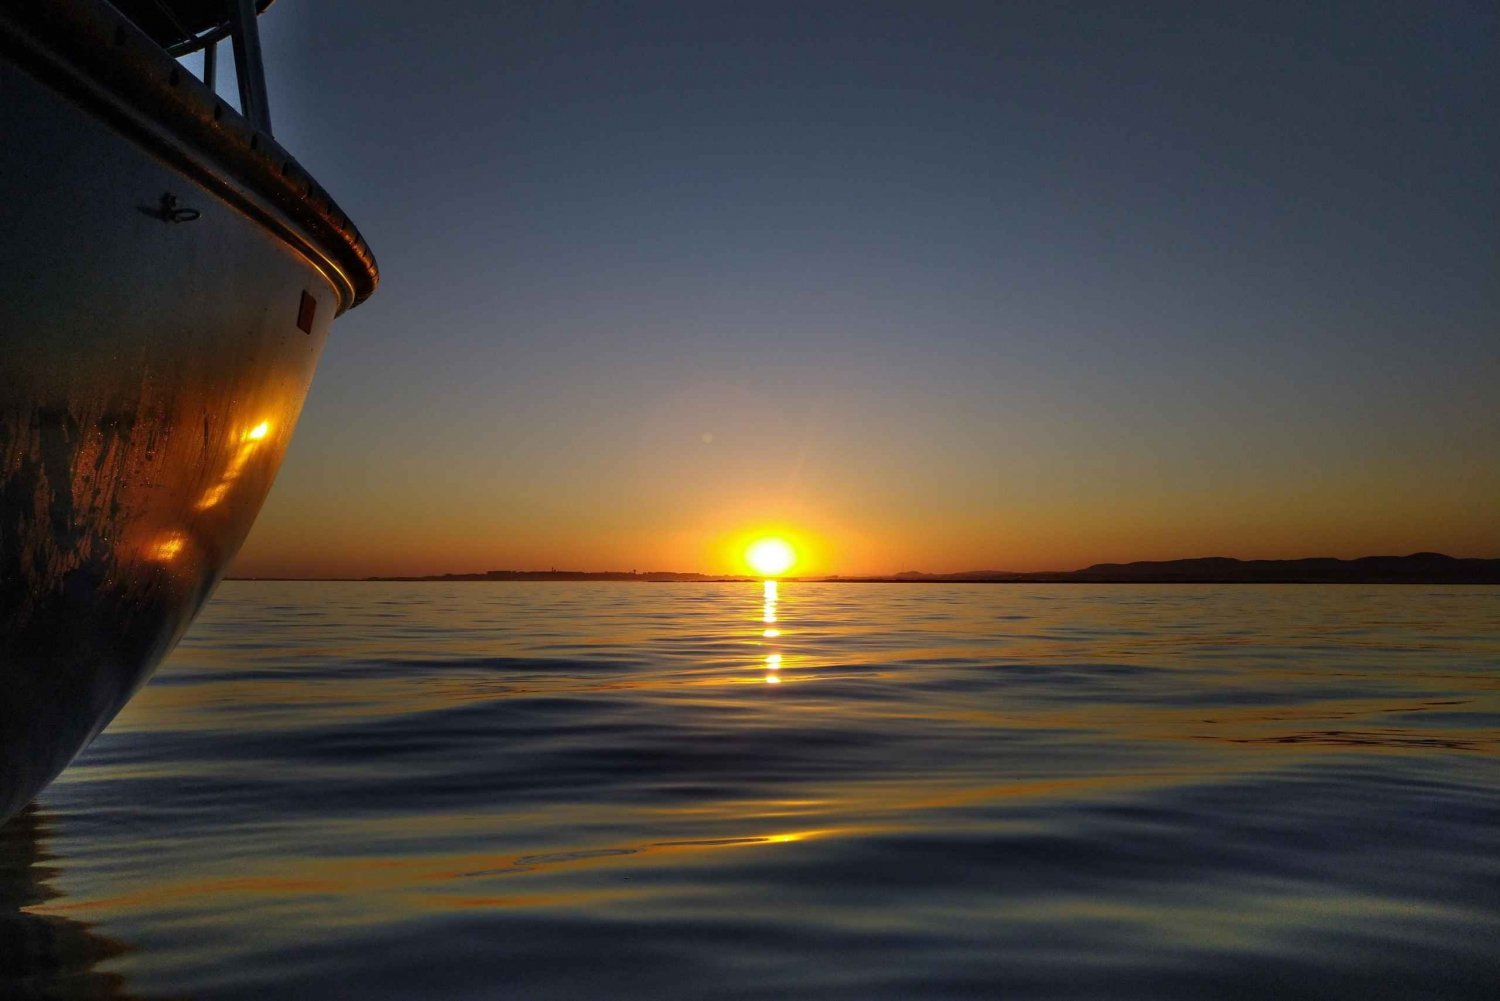 Sonnenuntergang auf einem klassischen Boot in der Ria Formosa Olhão, Getränke und Musik.